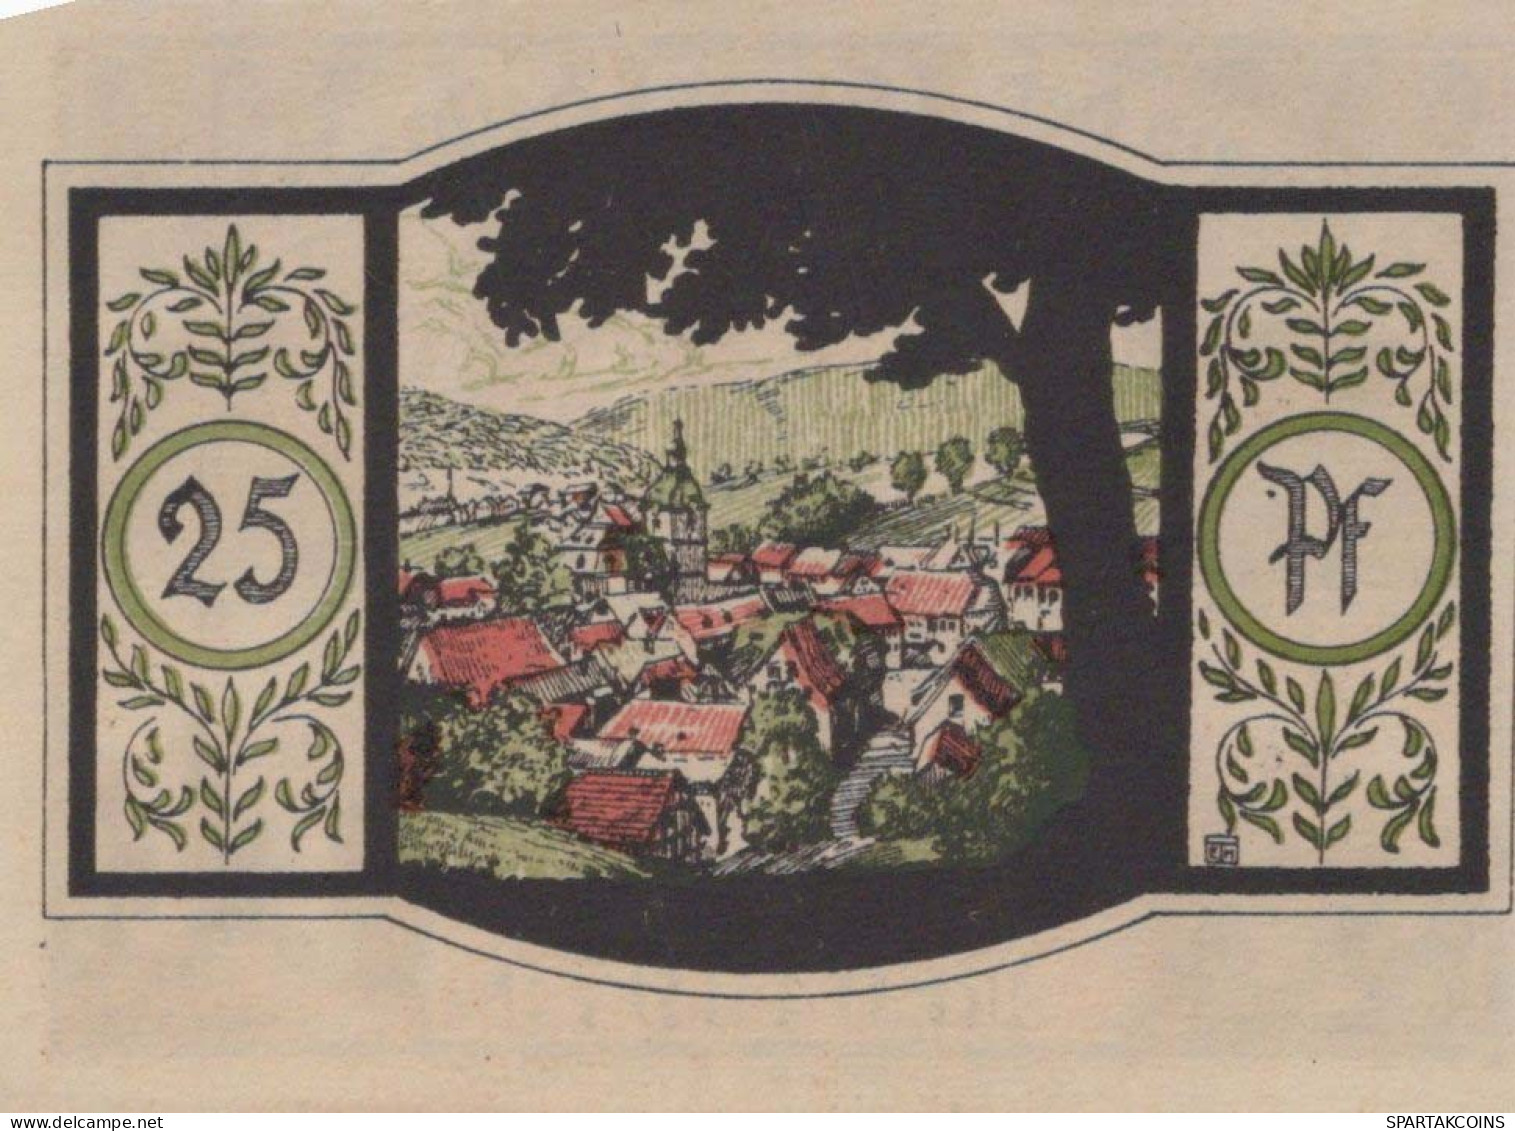 25 PFENNIG 1921 Stadt ZELLA-MEHLIS Thuringia UNC DEUTSCHLAND Notgeld #PH608 - [11] Emisiones Locales